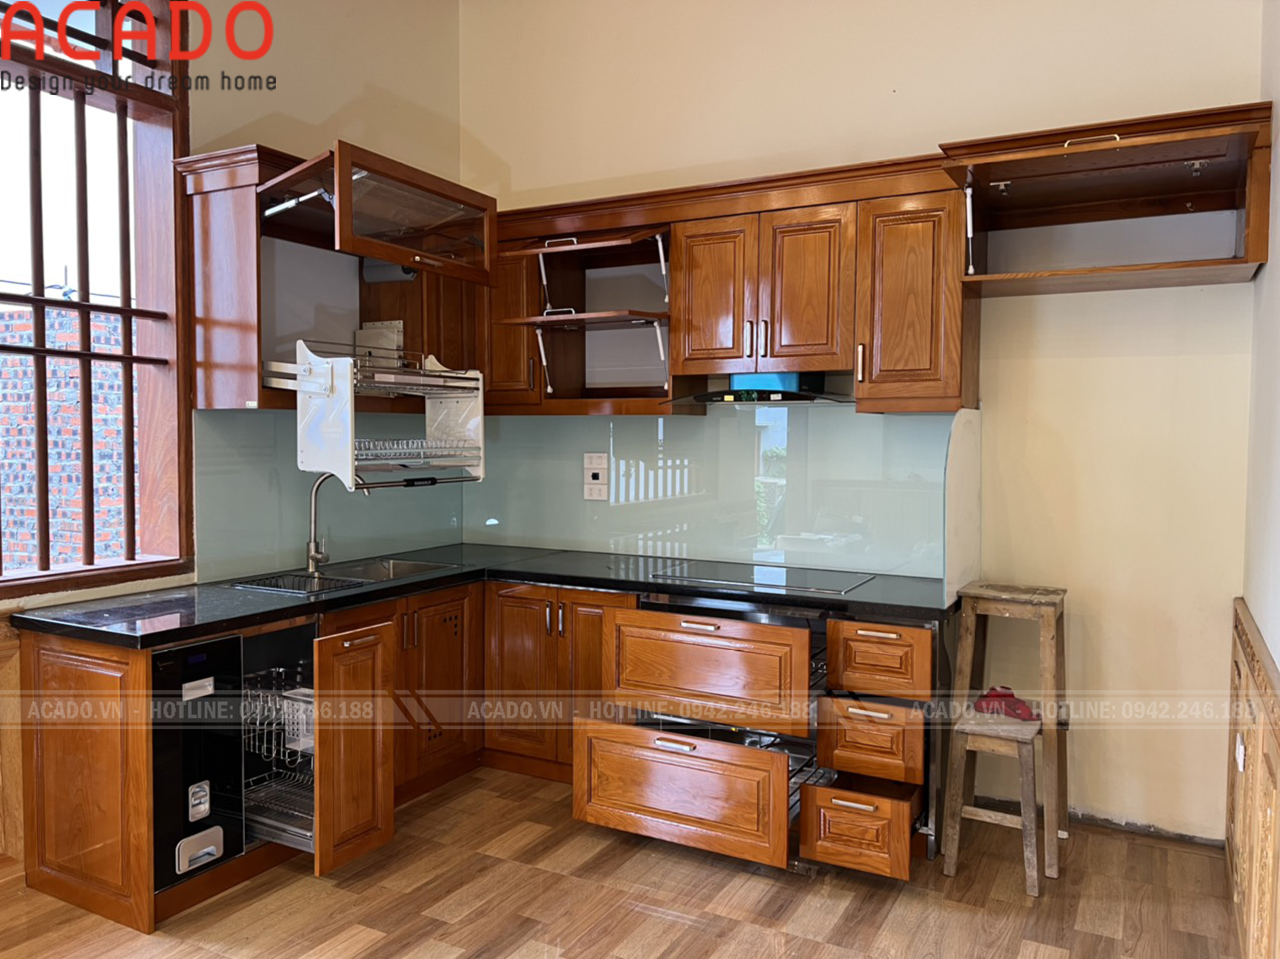 Tủ bếp kết hợp với kính ốp tường màu xanh ngọc vô cùng bắt mắt và trẻ trung.